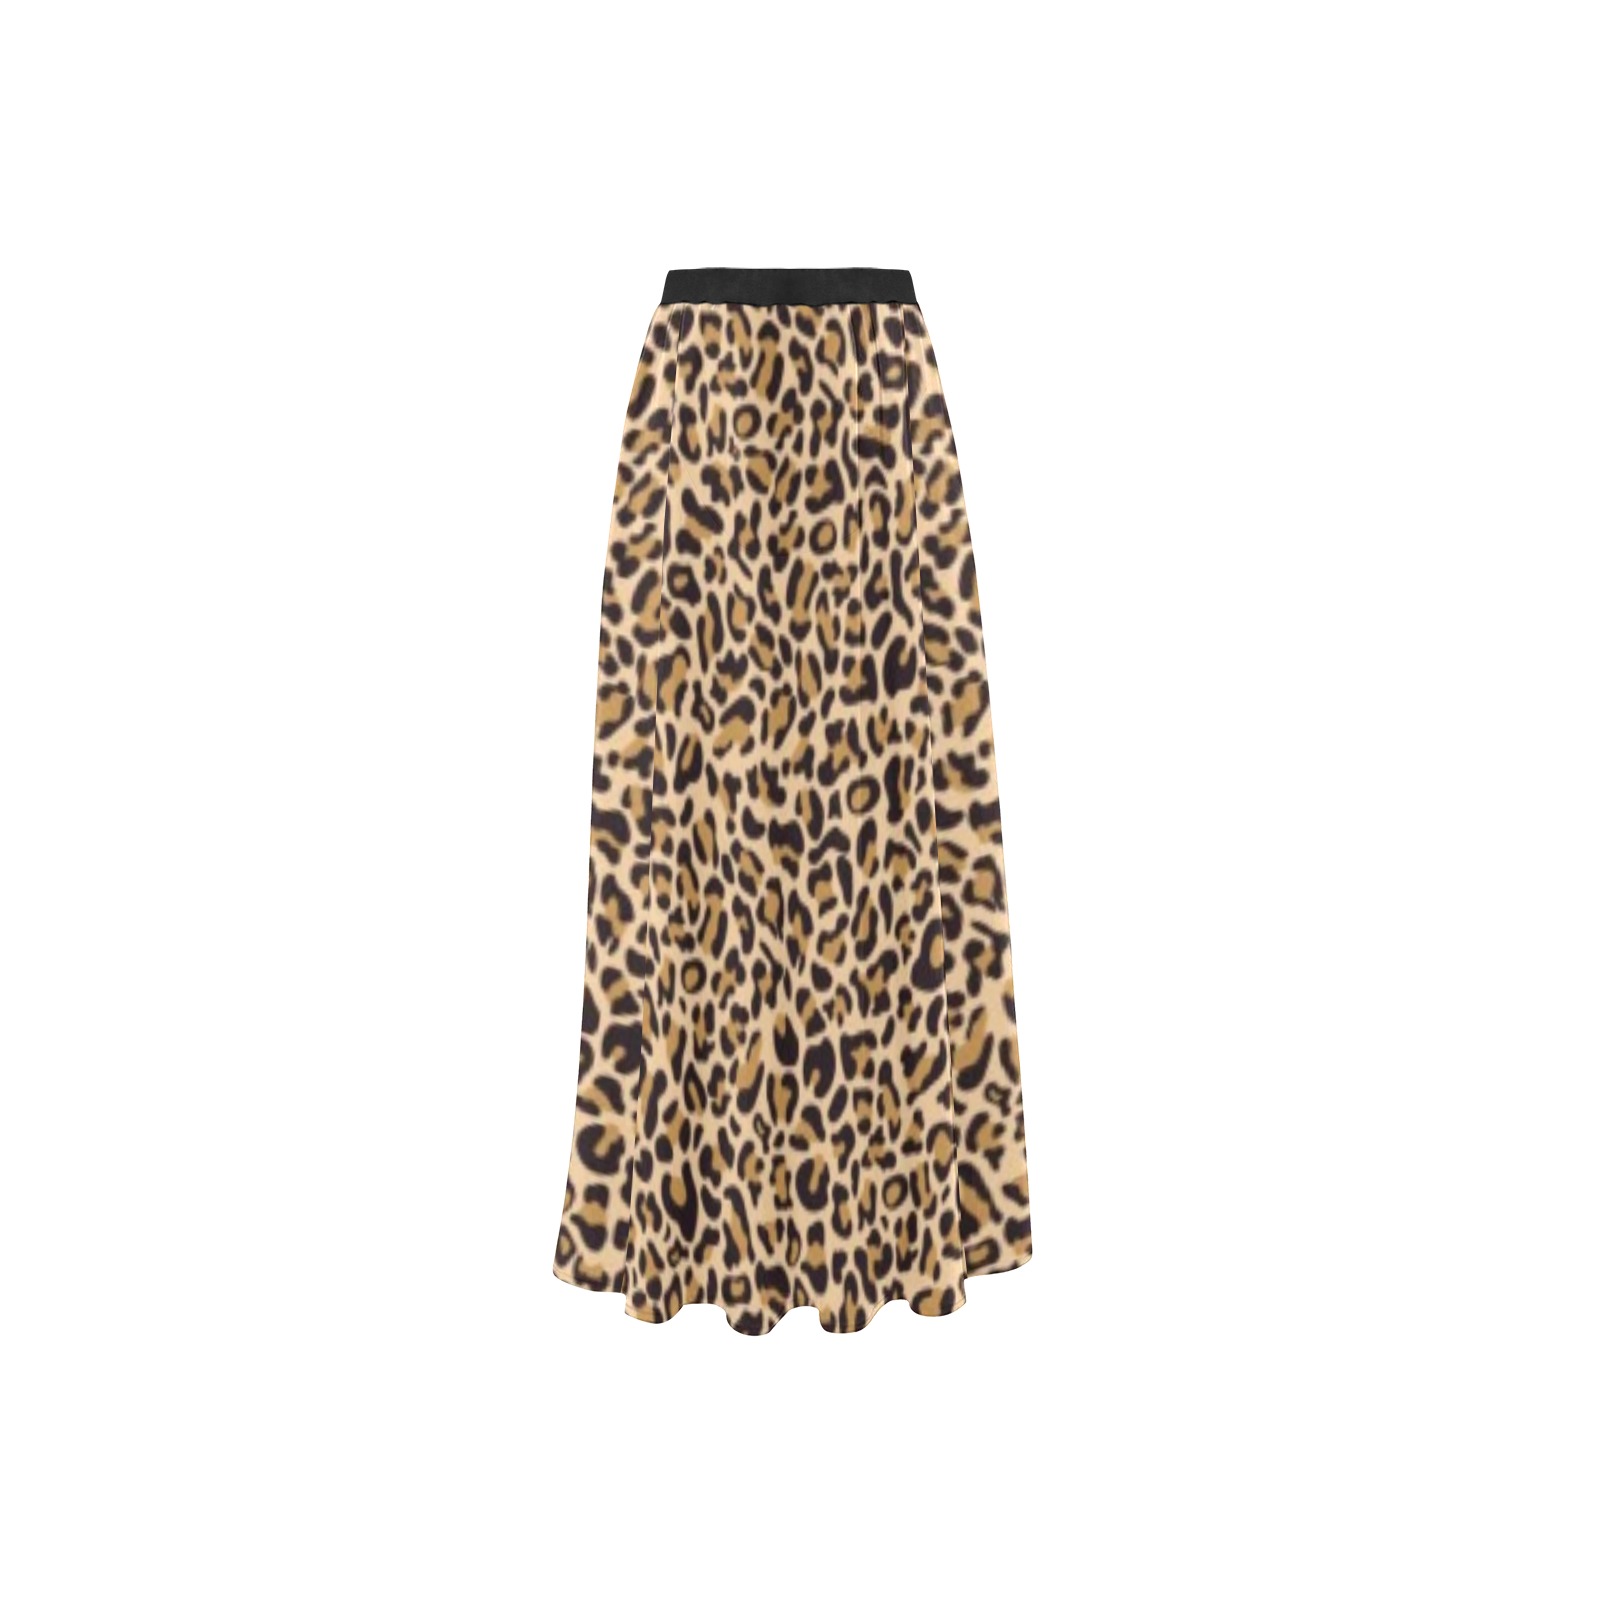 Dionio Clothing - Cheetah High Slit Long Beach Dress High Slit Long Beach Dress (Model S40)